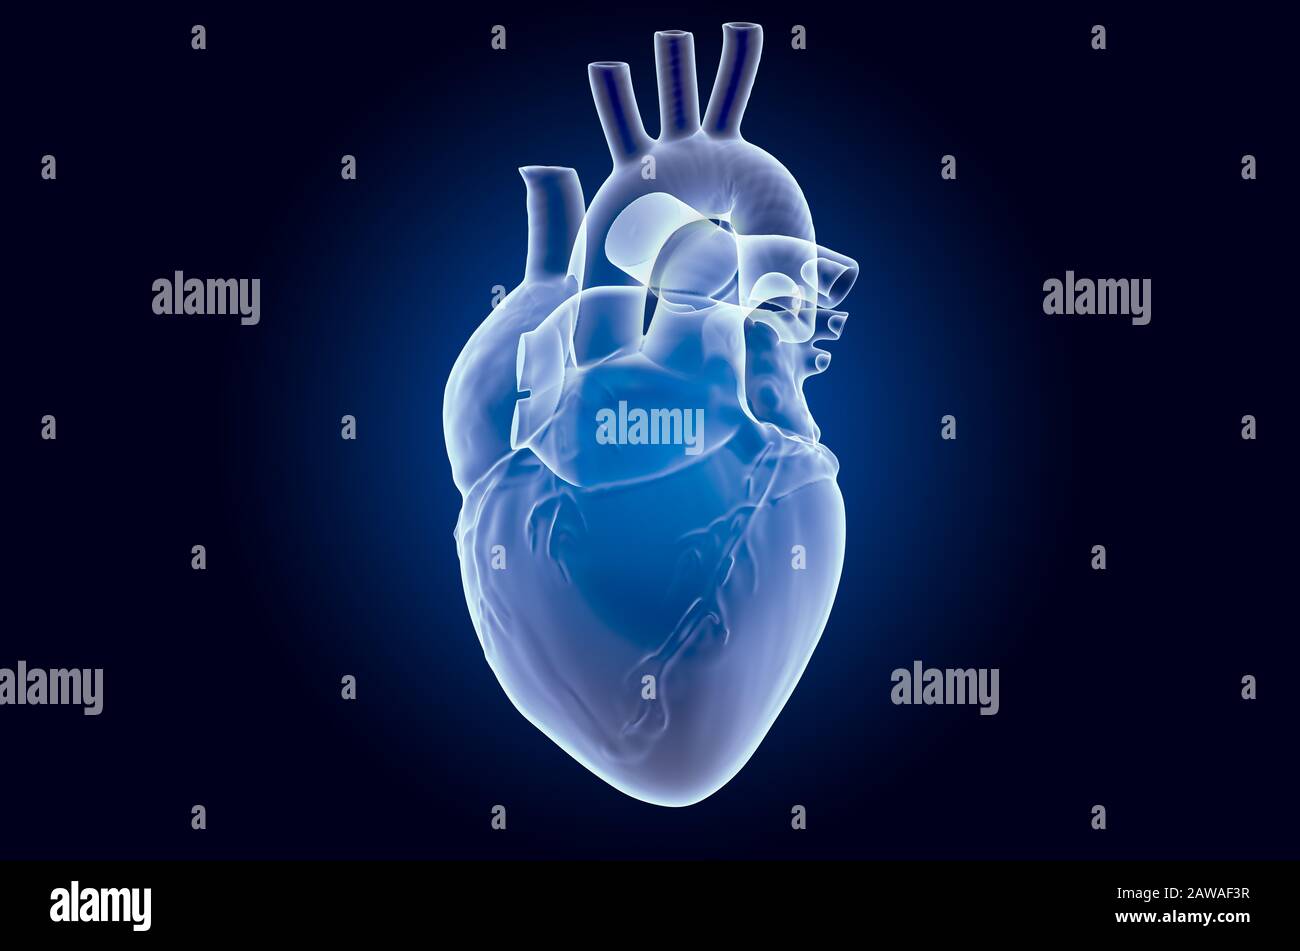 Cuore umano, ologramma a raggi X. Rendering 3D su sfondo blu scuro Foto Stock